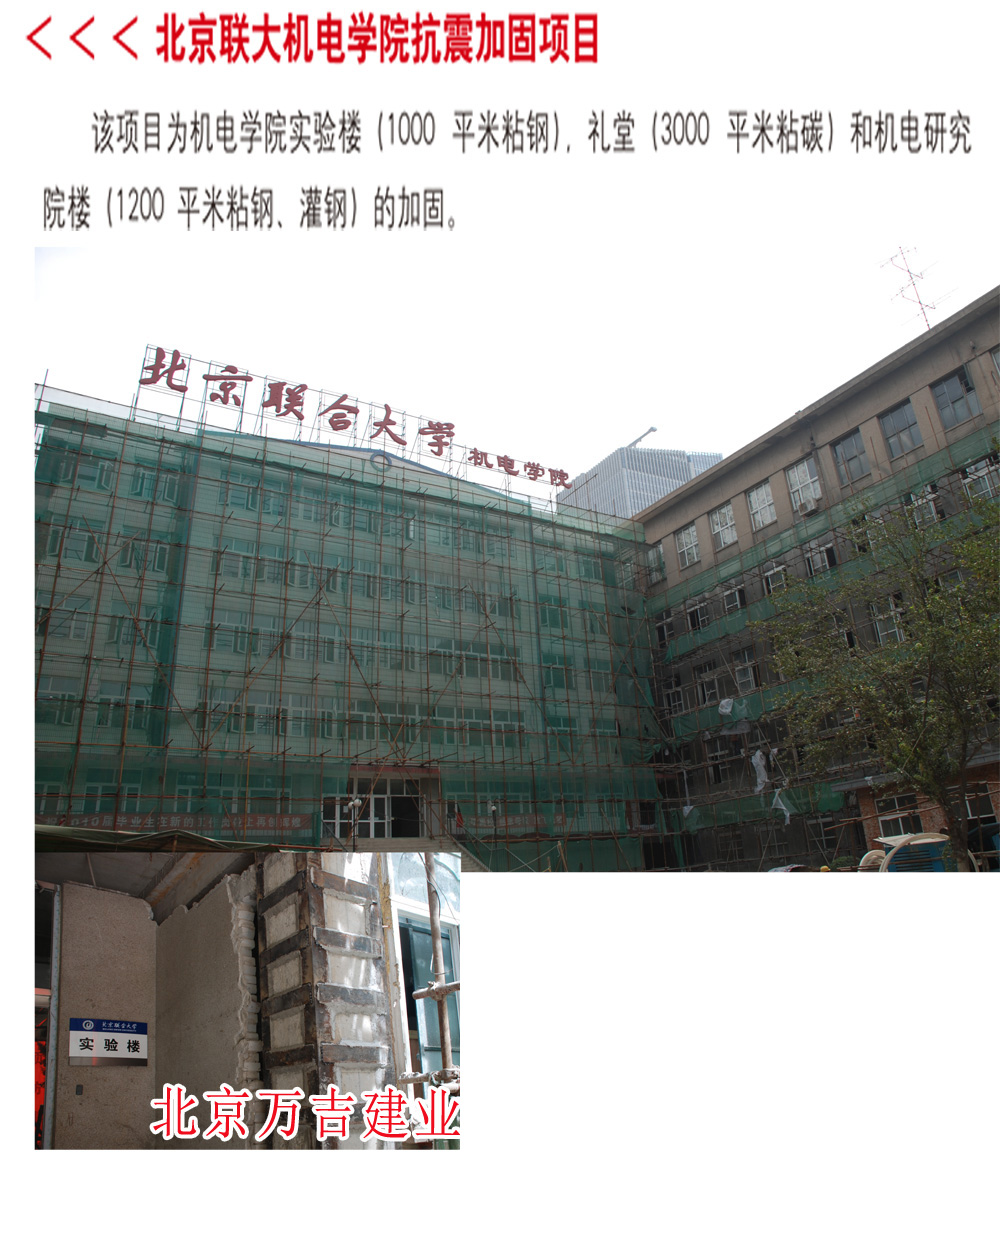 北京联大机电学院抗震加固项目